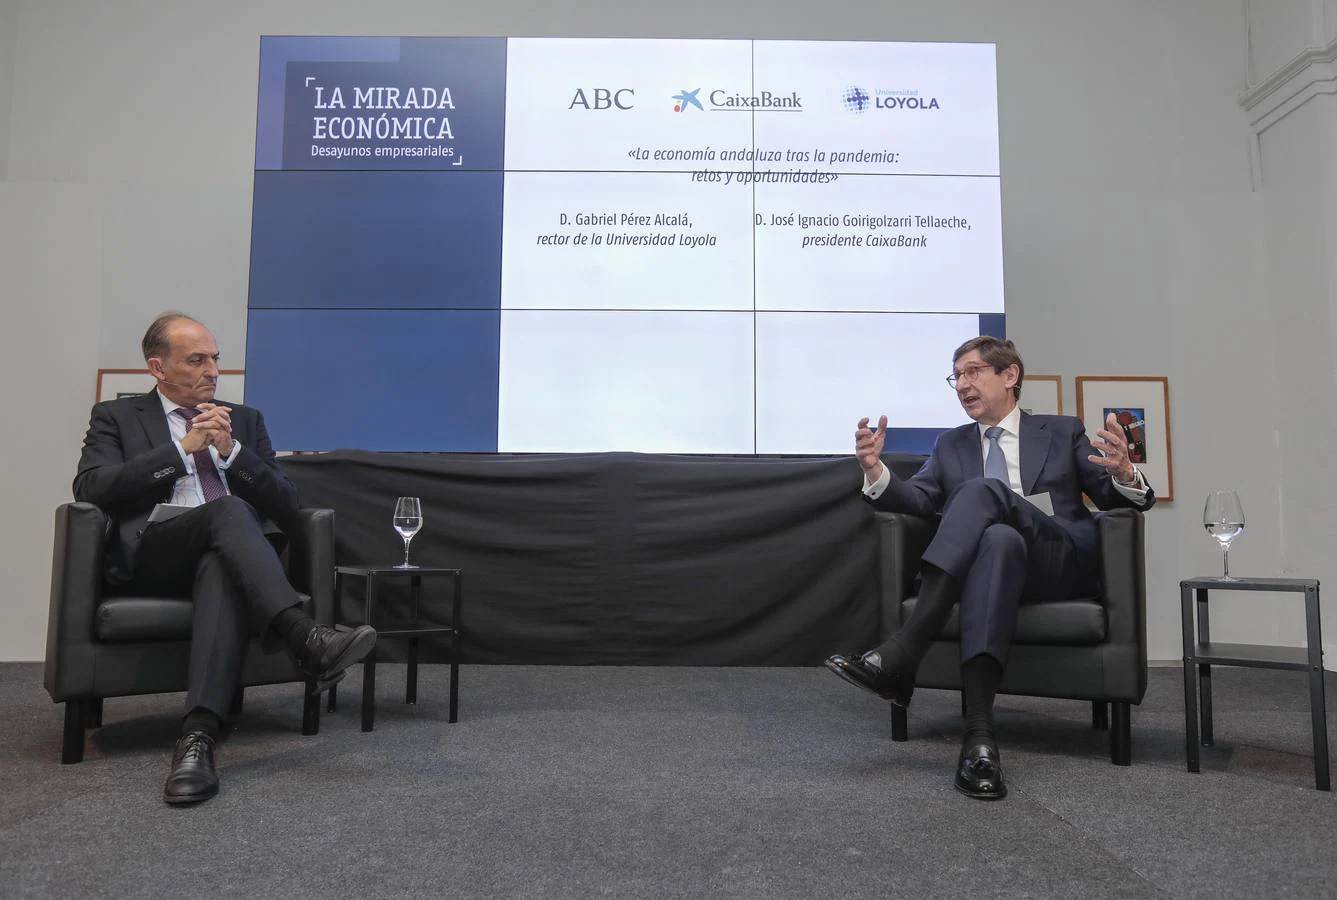 Goirigolzarri y su visión de la economía andaluza, protagonista del foro 'La Mirada Económica'